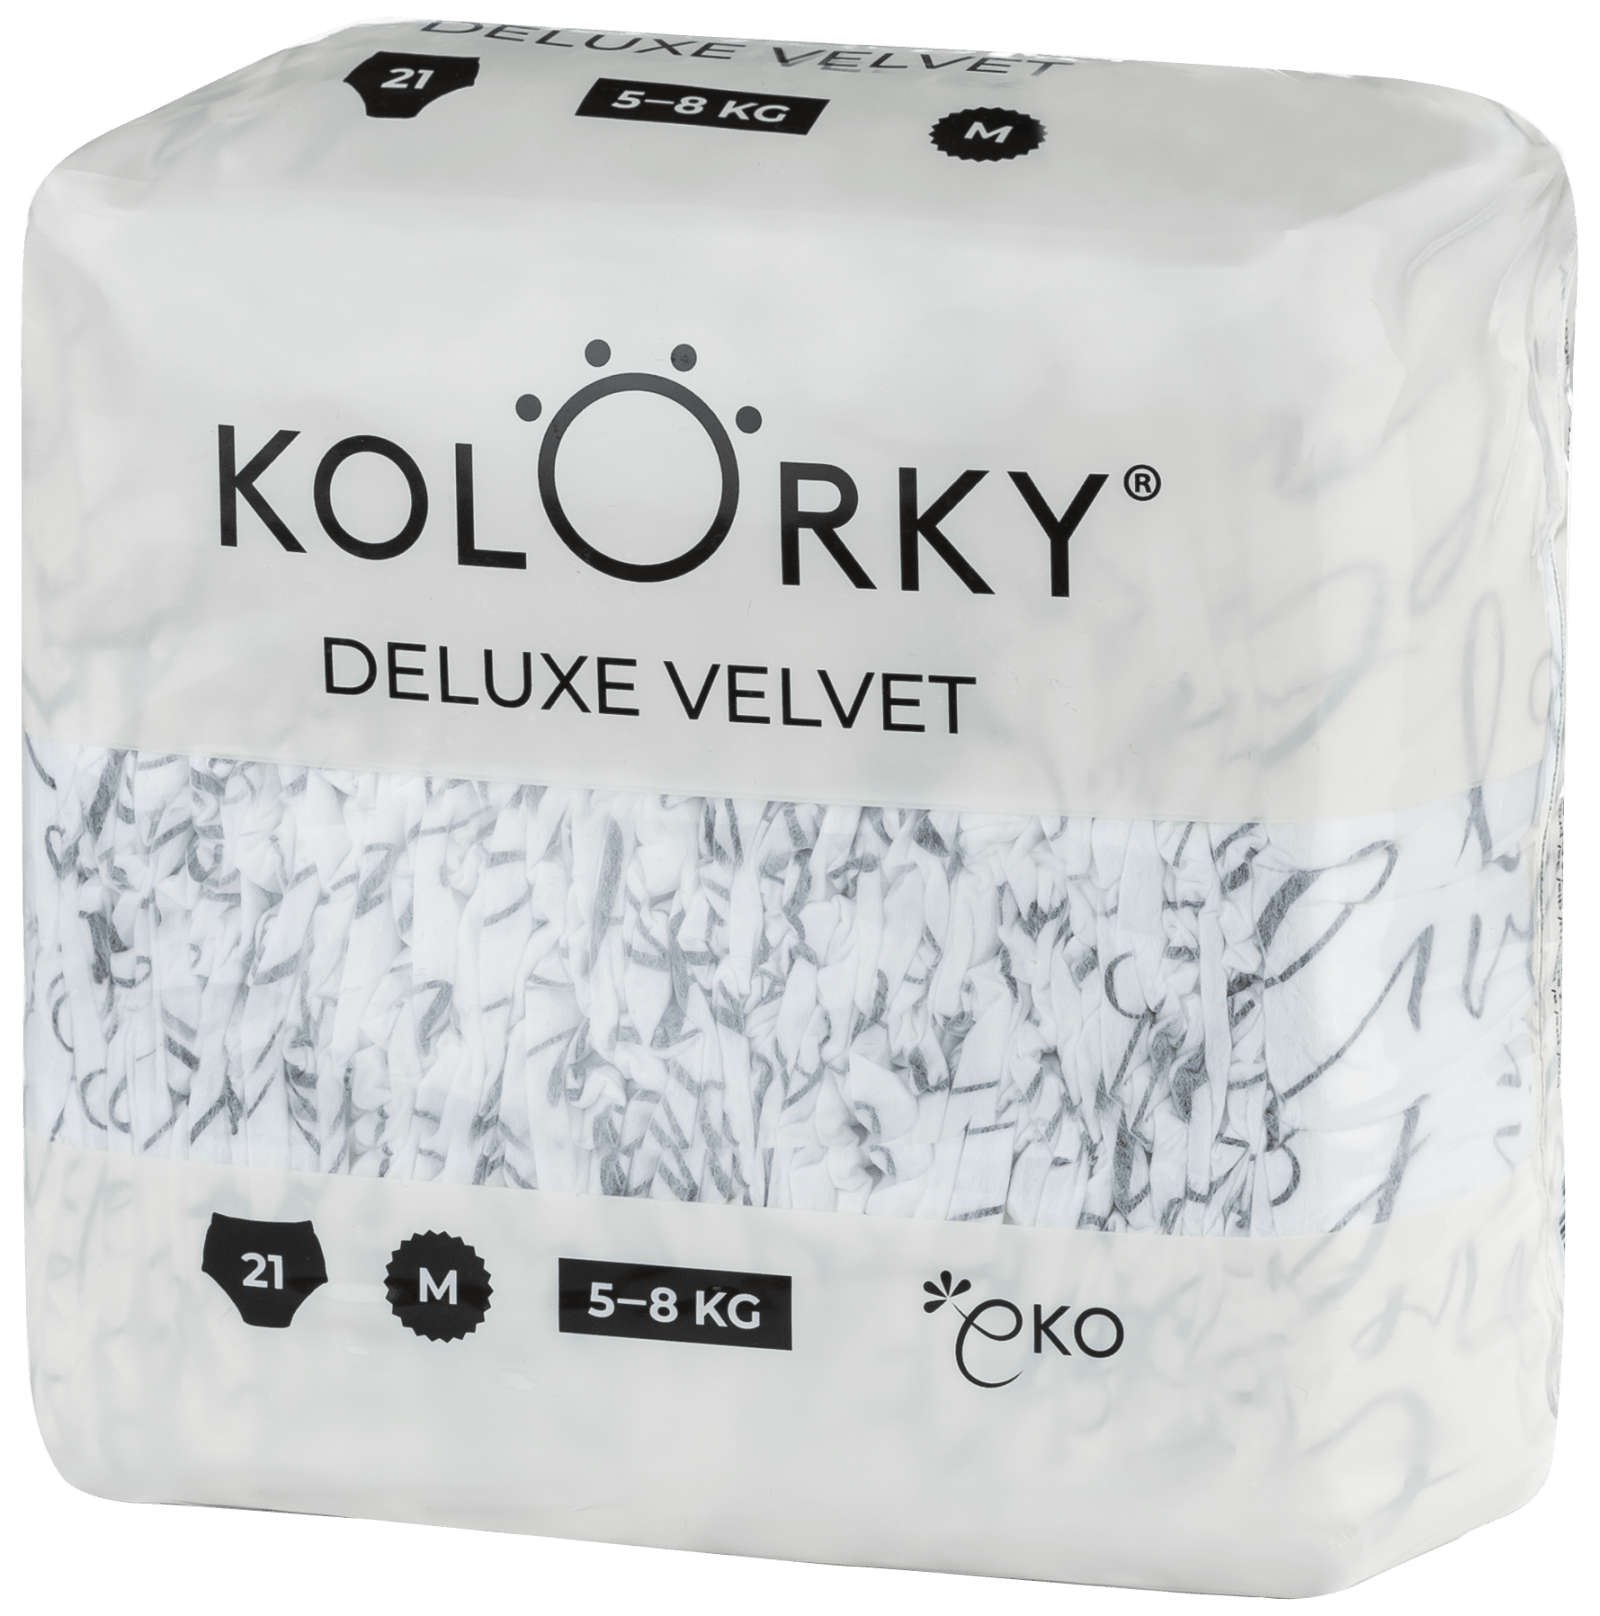 Kolorky Velvet Deluxe Love Live Laugh öko pelenka, M (5-8kg), 21db